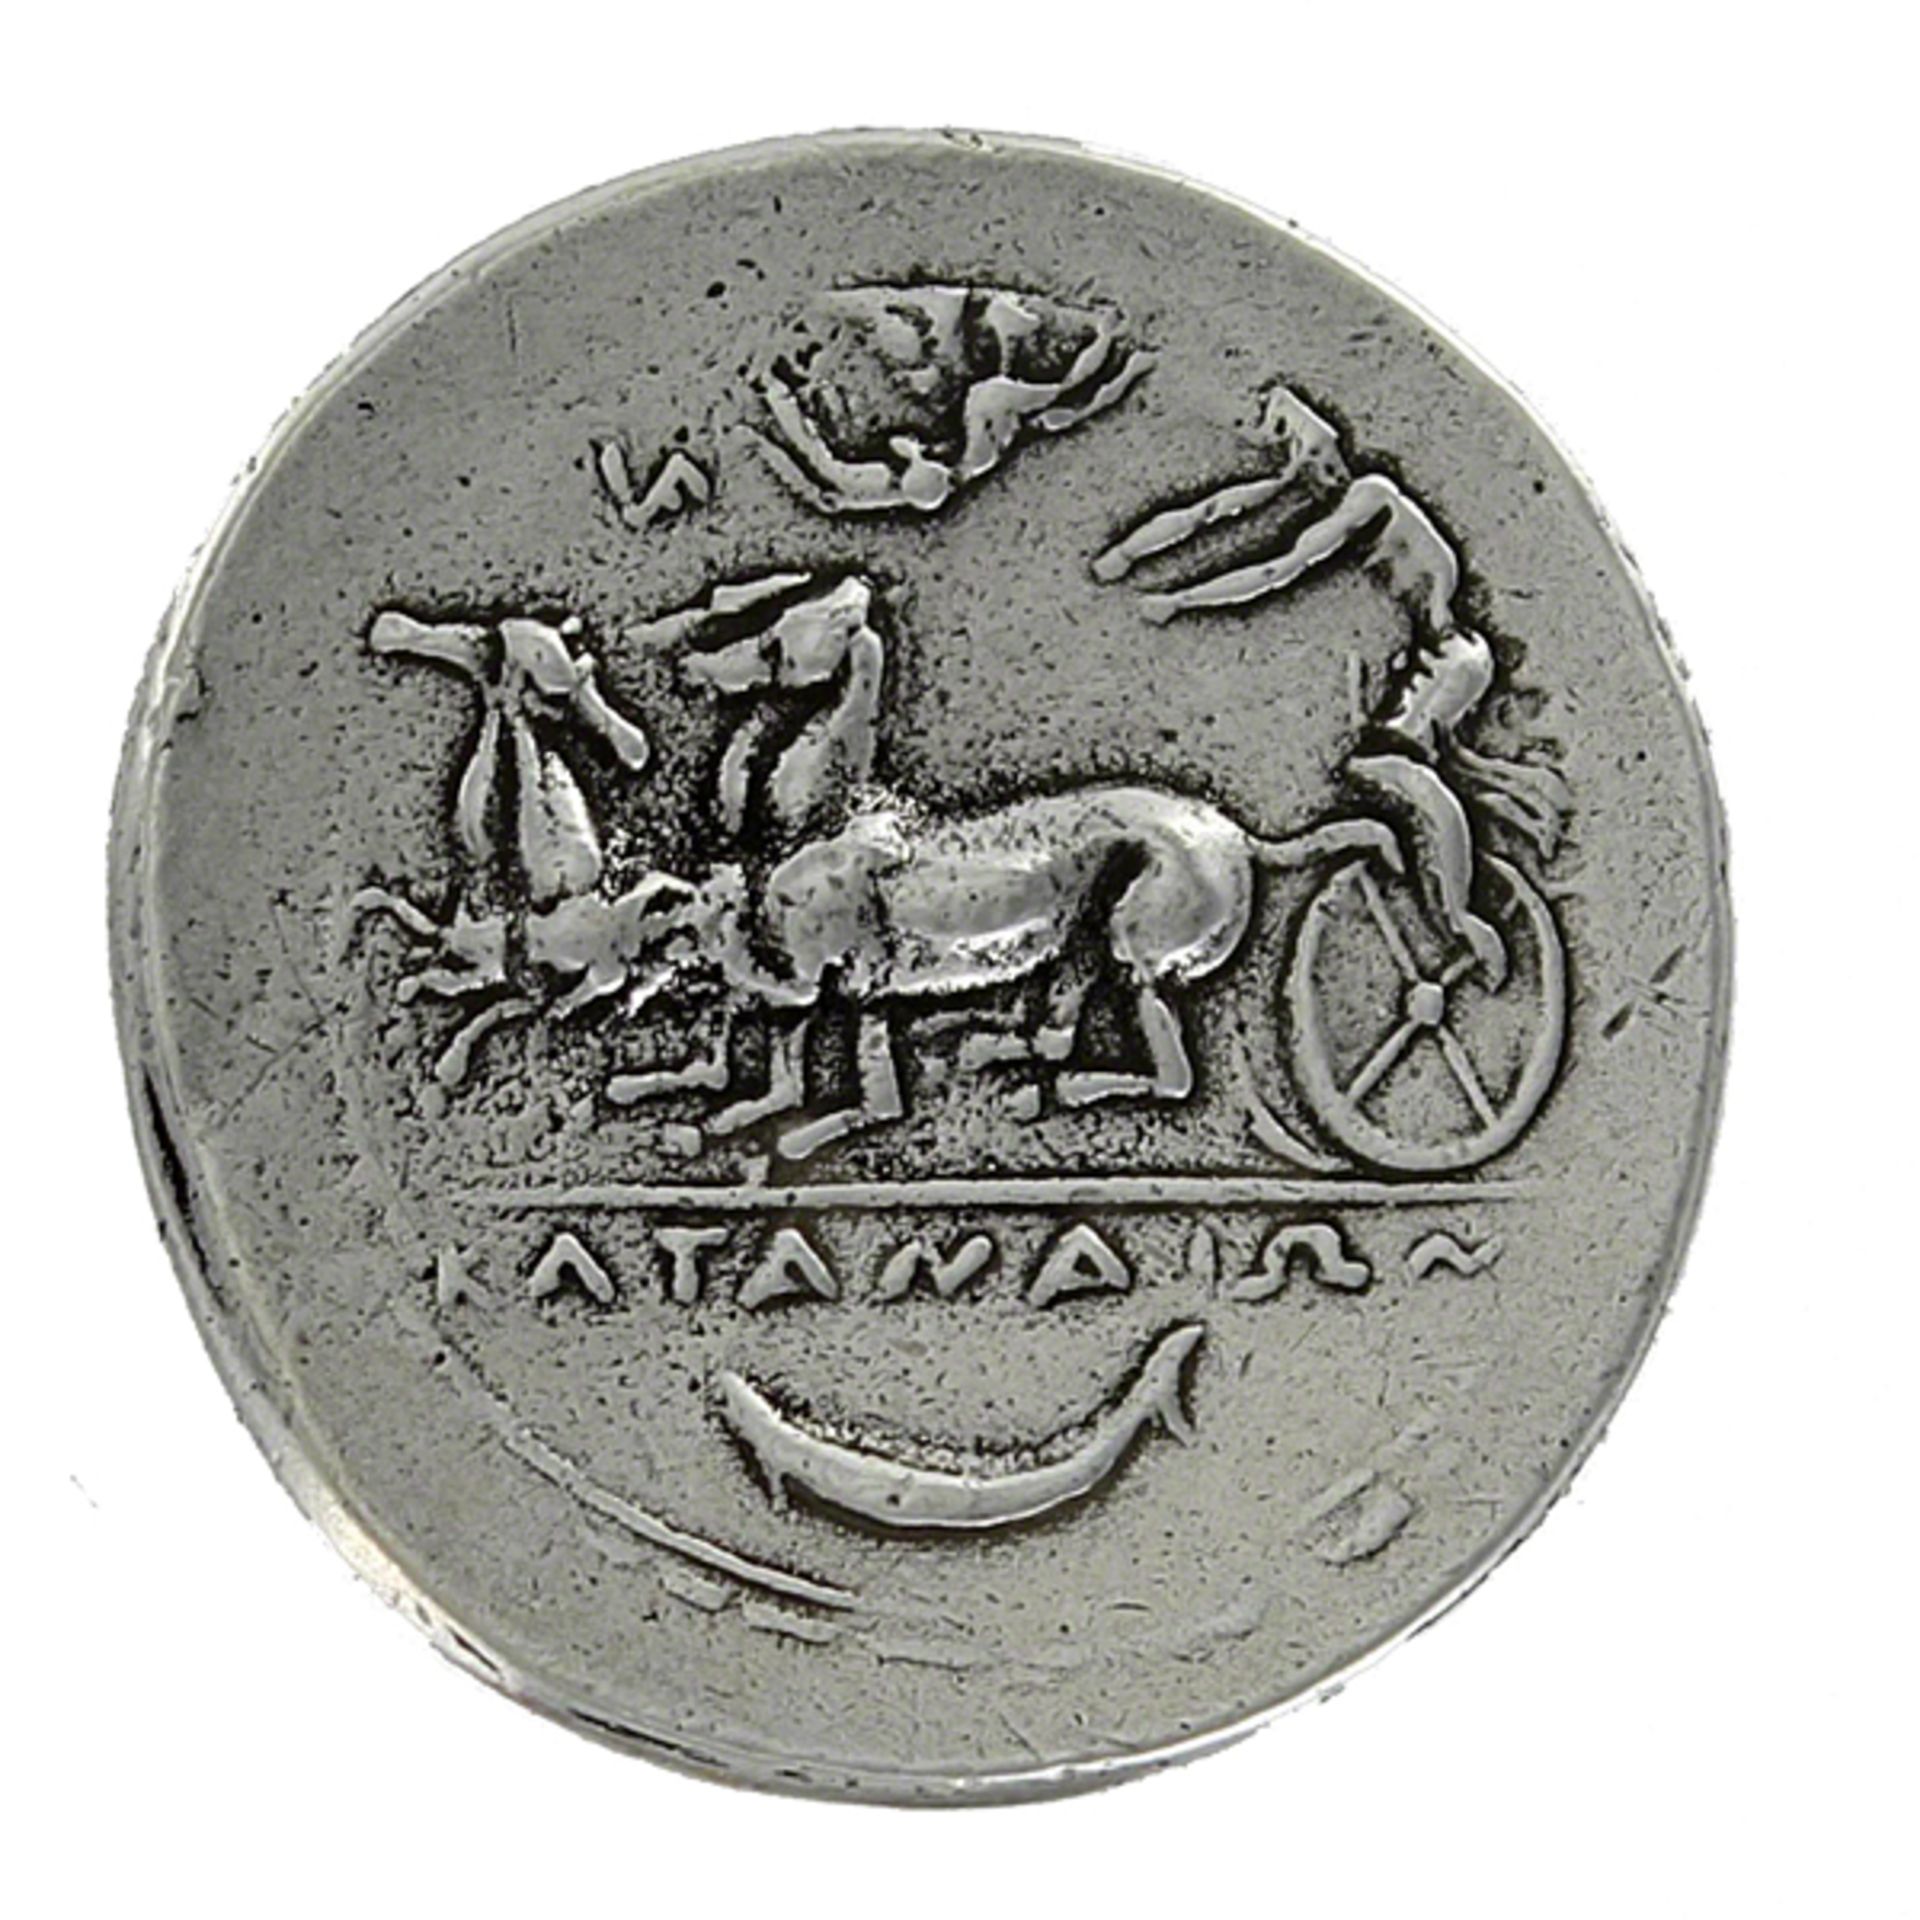 Katane, Sicily, Tetradrachm 413 BC Coin - Image 2 of 2